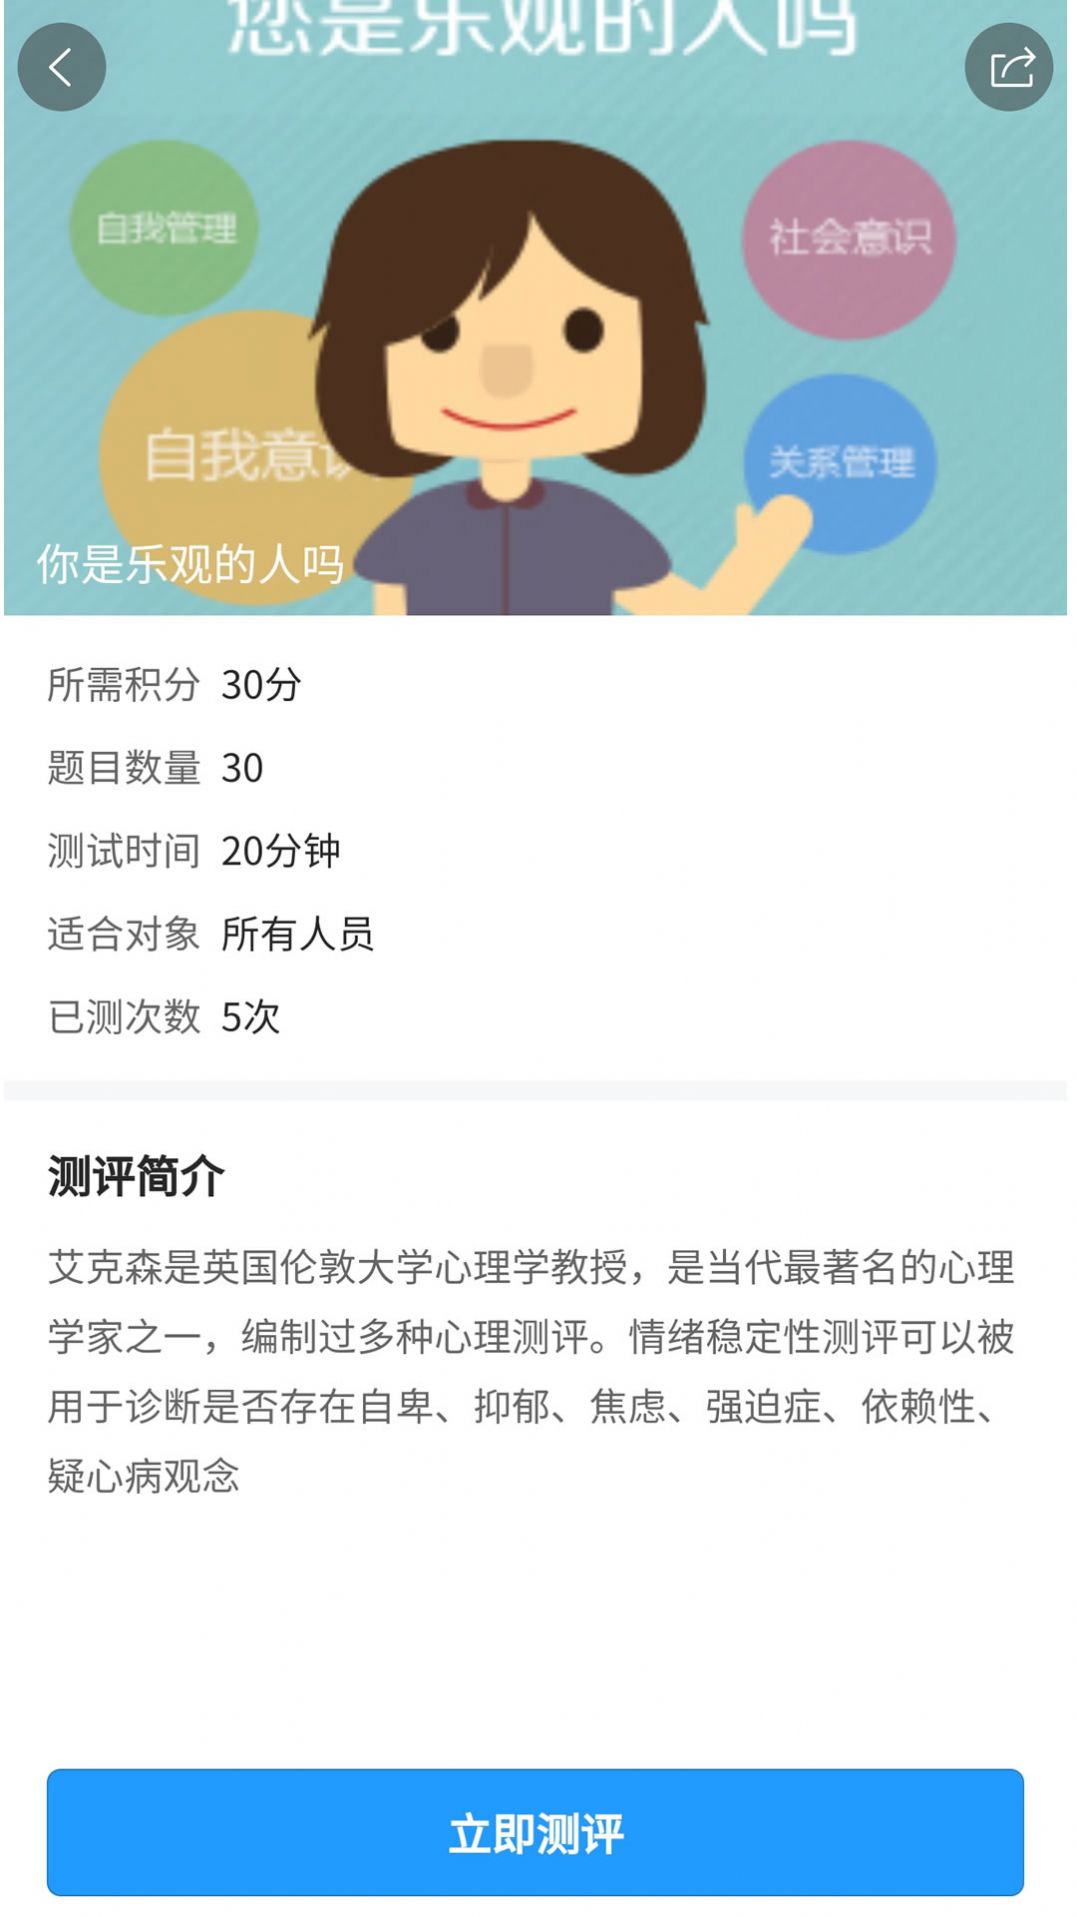 江苏人才网招聘信息网app最新版下载图片2